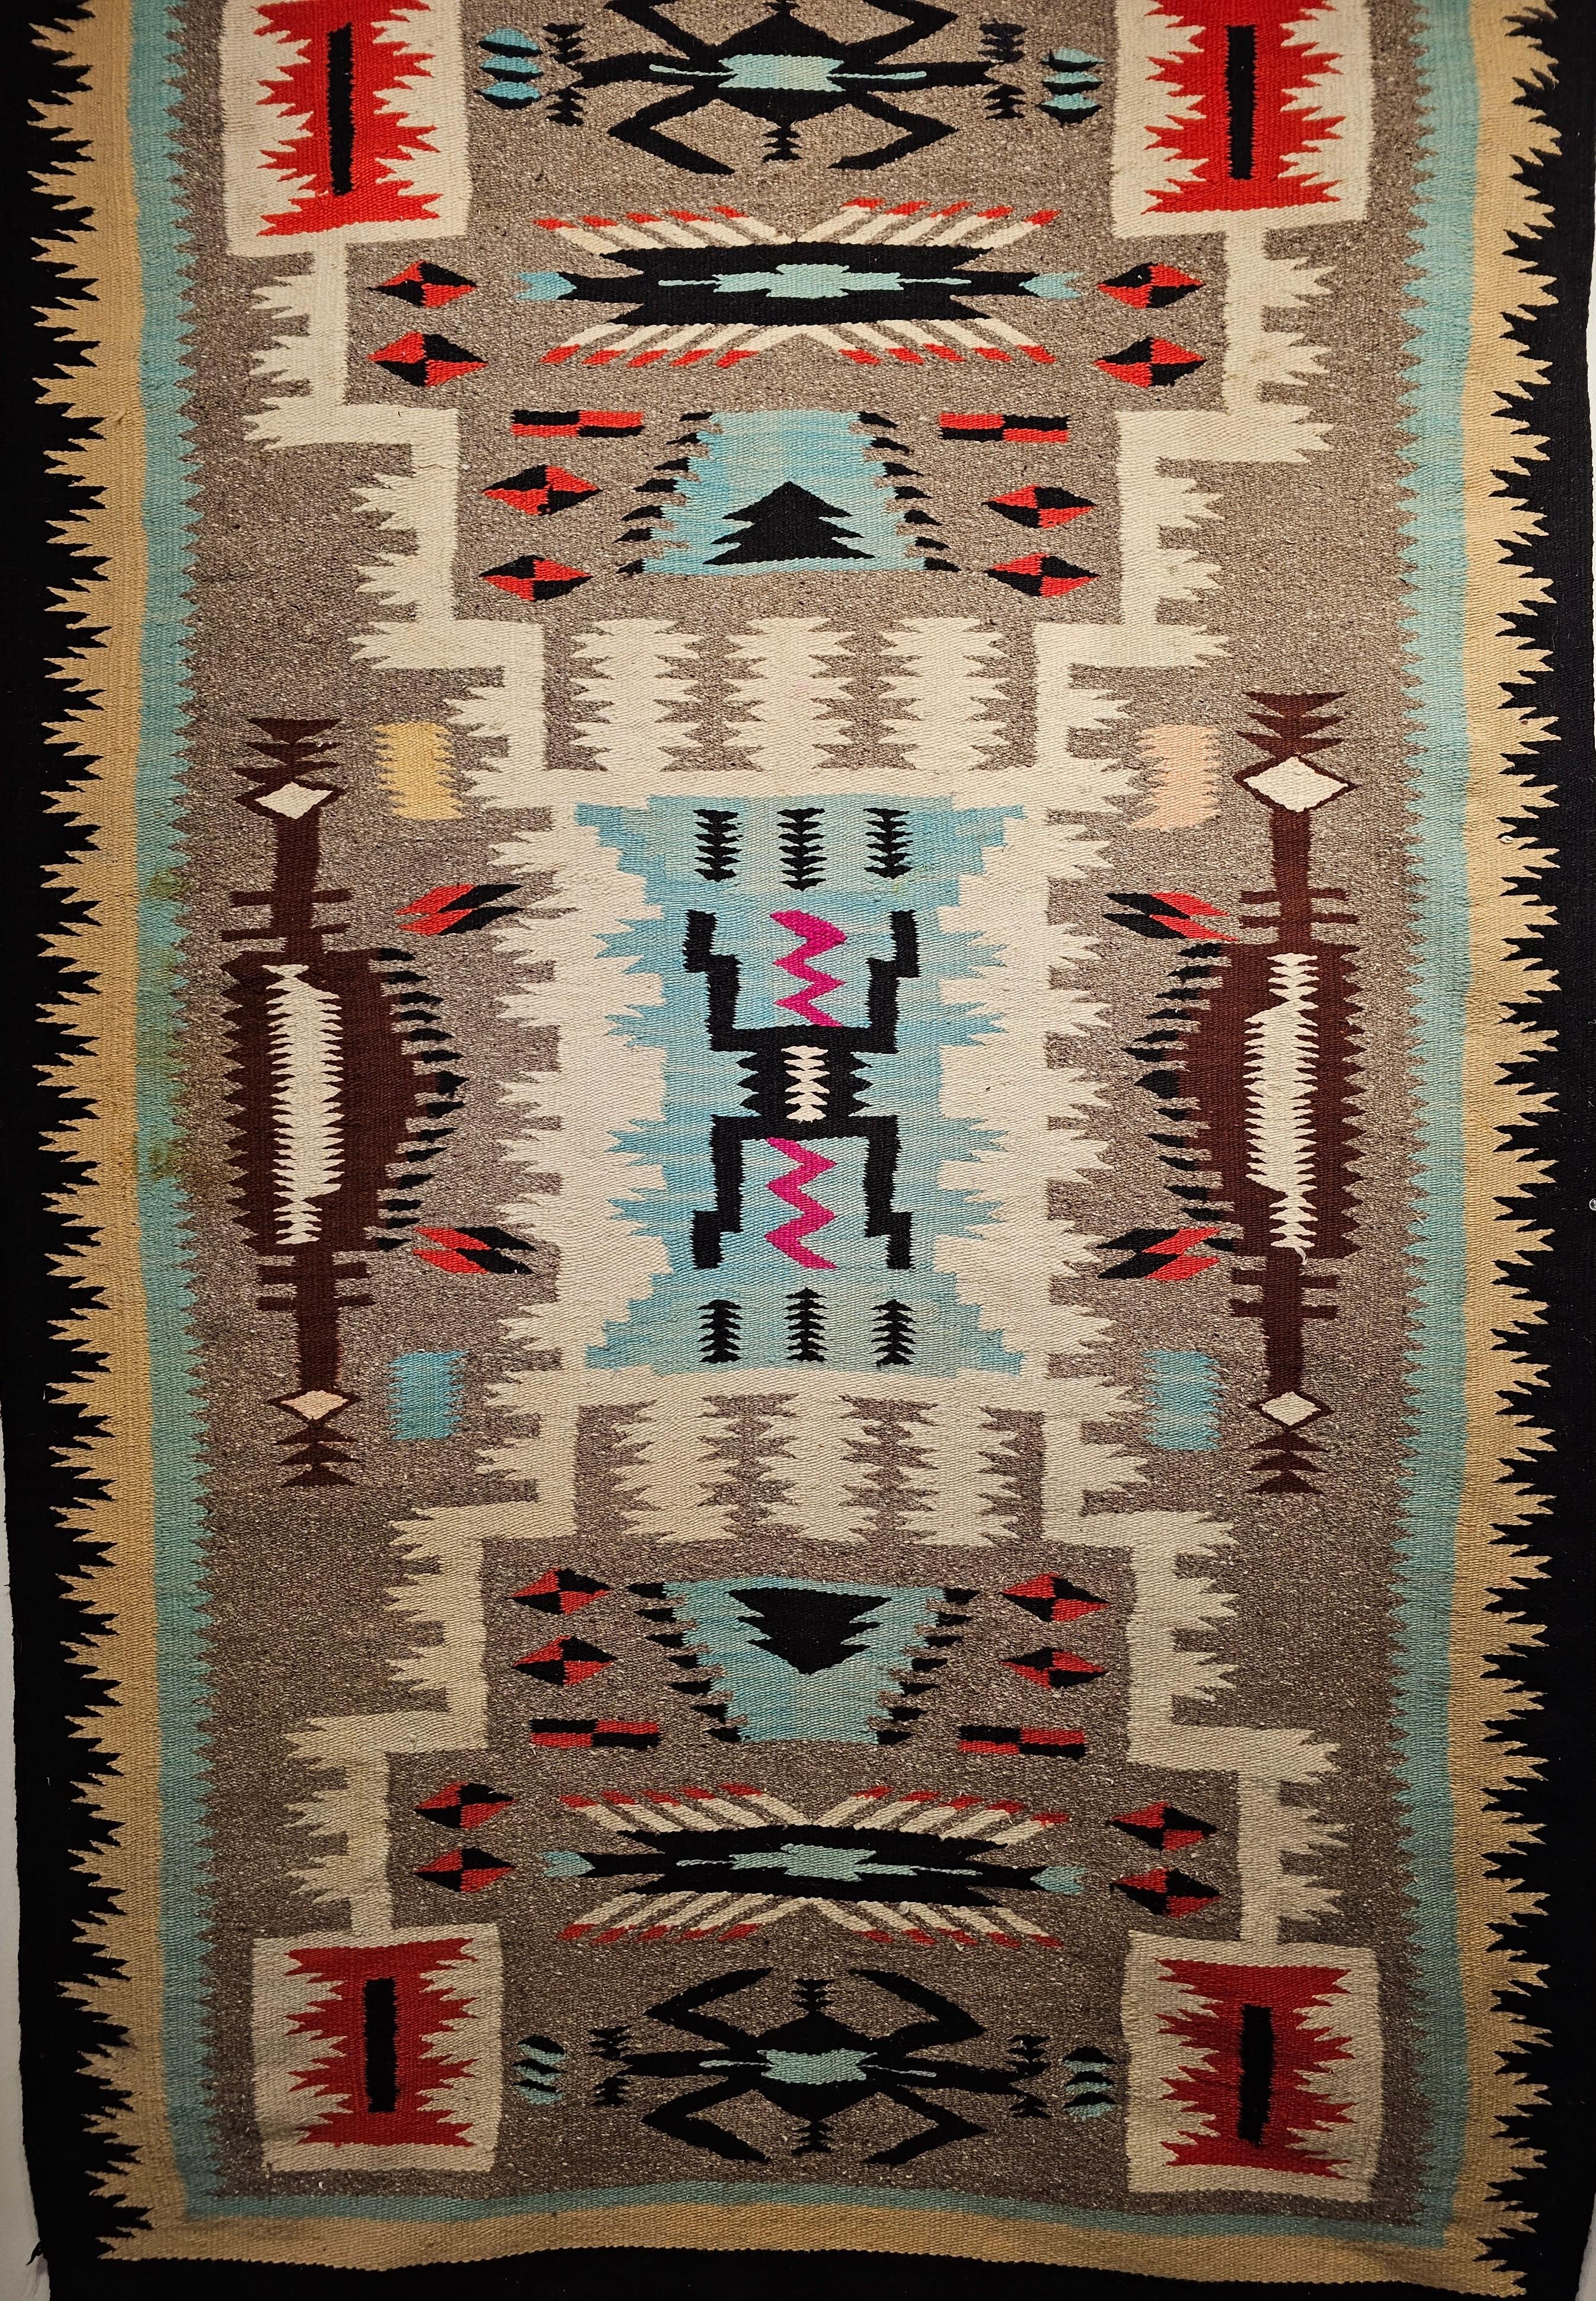 Tapis vintage Navajo d'Amérique du Nord avec un design de guerrier de la tempête dans des couleurs turquoise, rose et marron.  Le tapis Navajo a été tissé à la main dans le sud-ouest des États-Unis et date du milieu des années 1900. Ce tapis